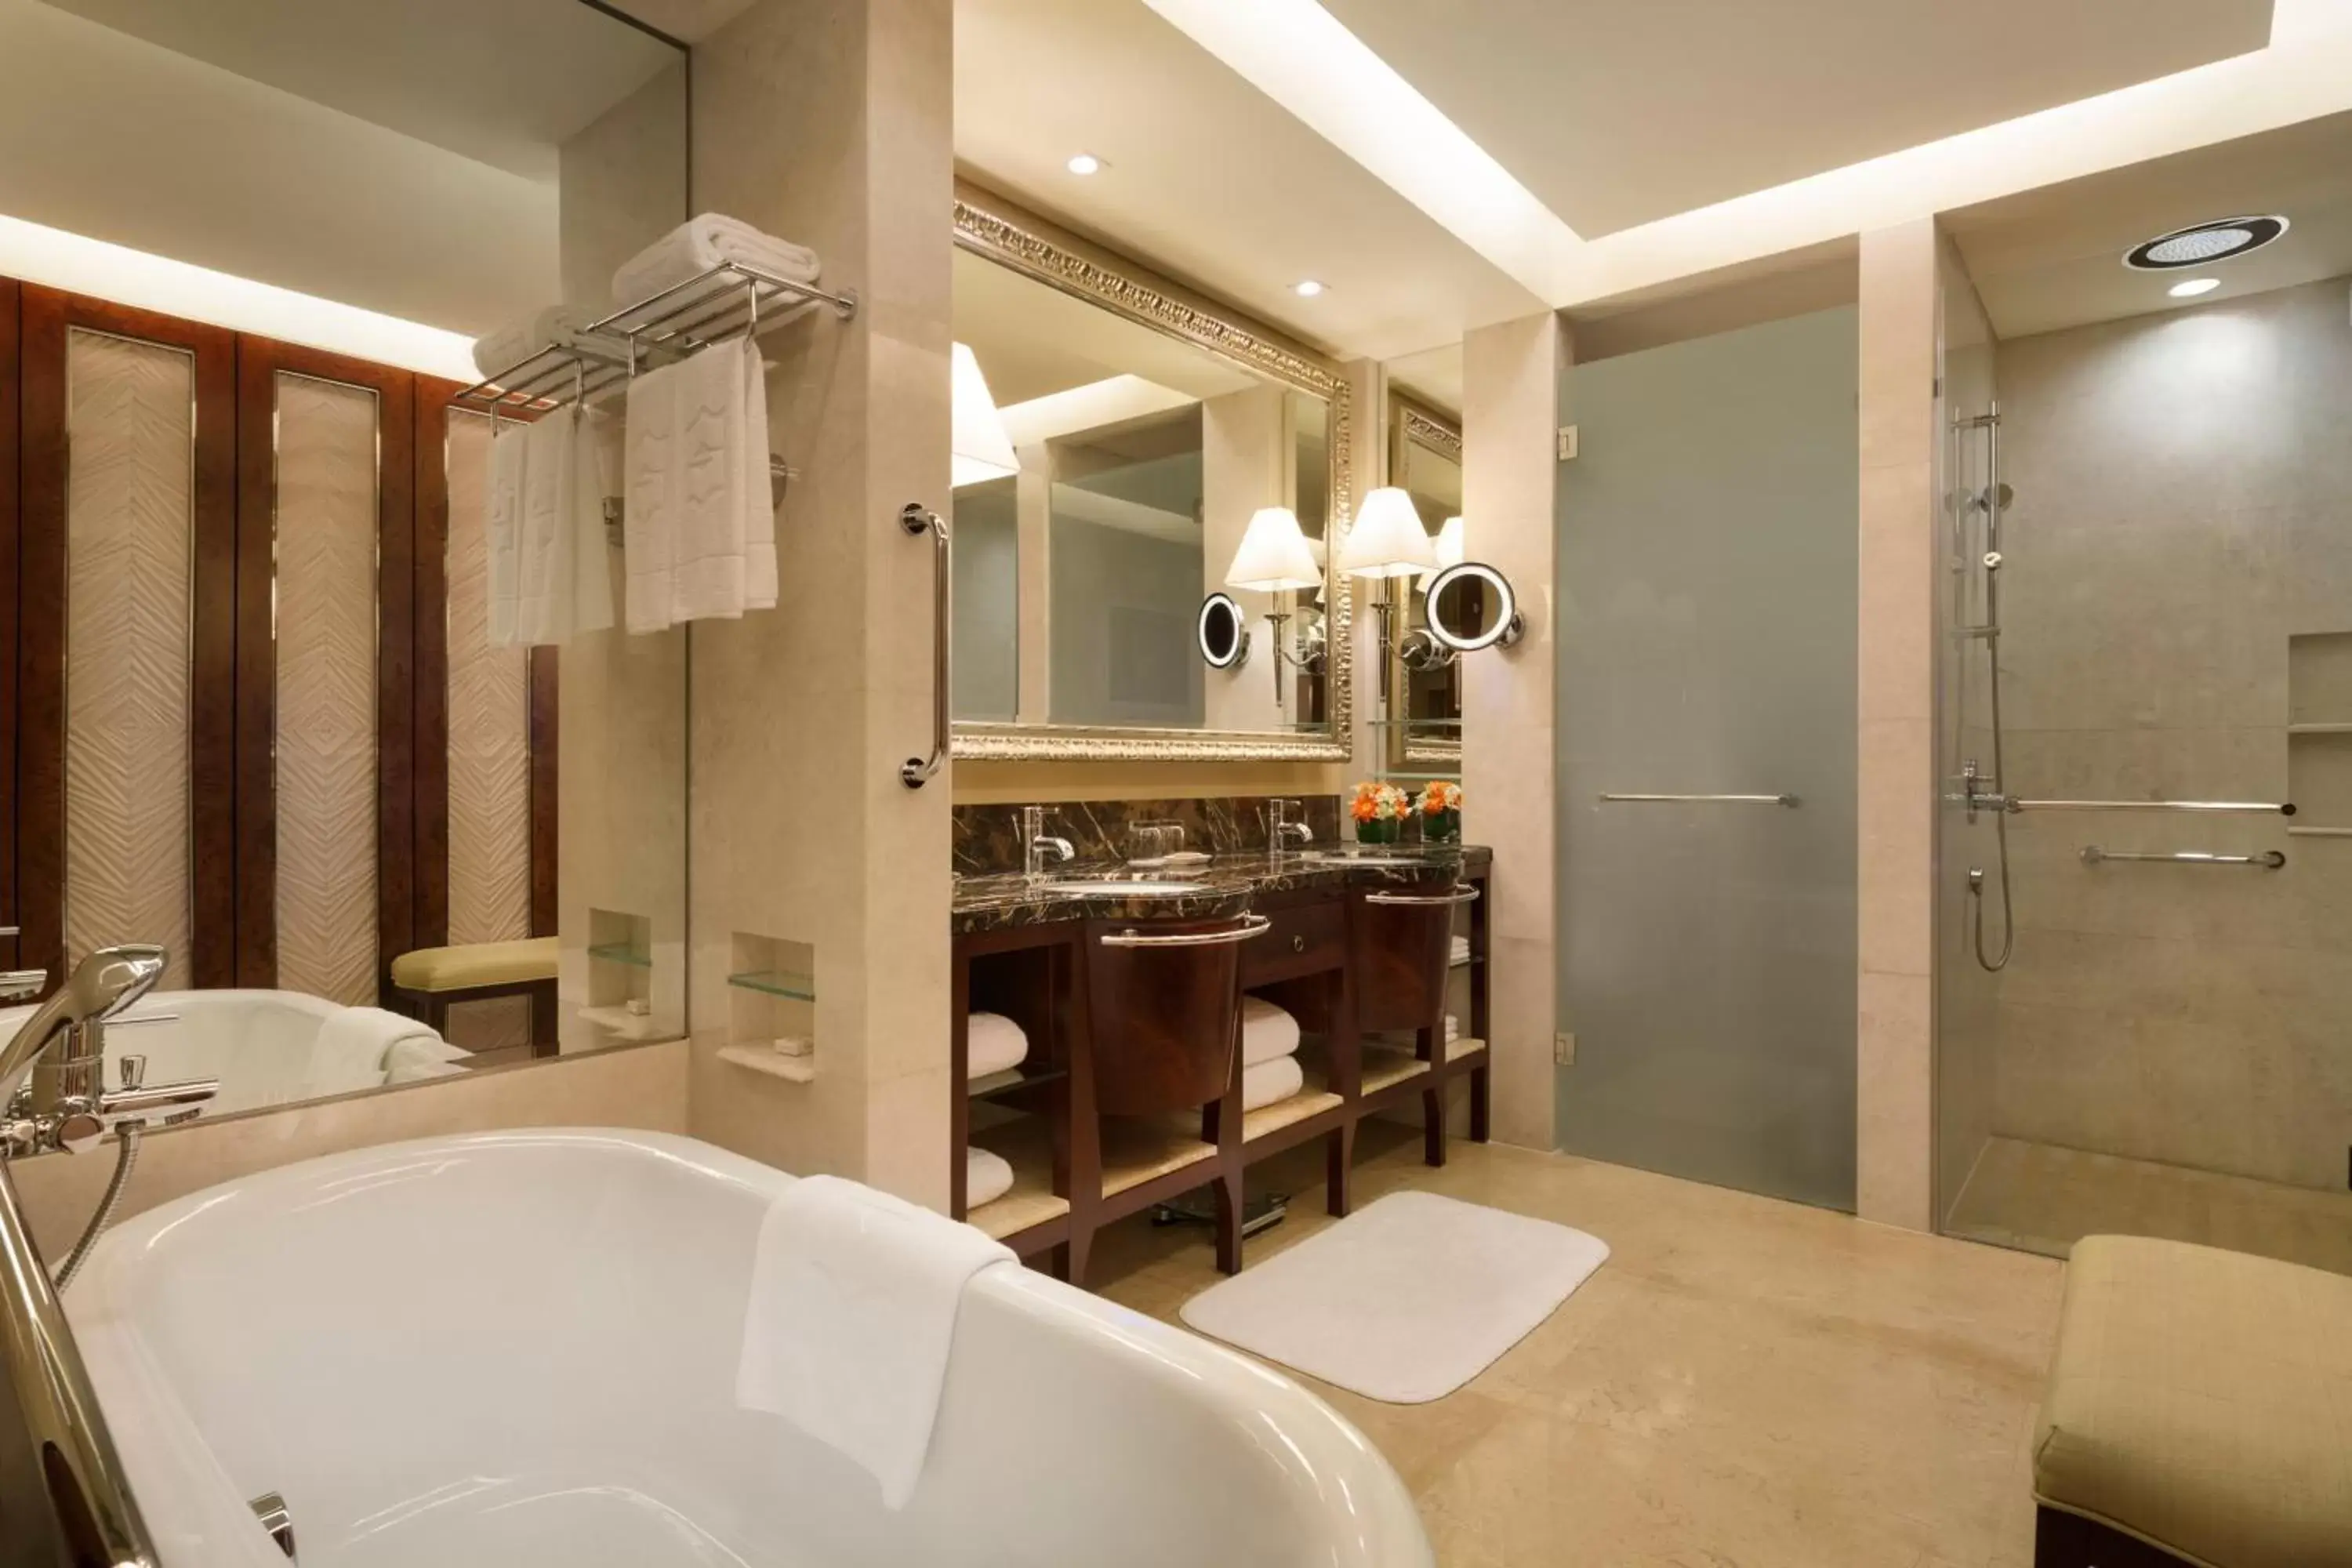 Toilet, Bathroom in Shangri-La Qingdao - May Fourth Square